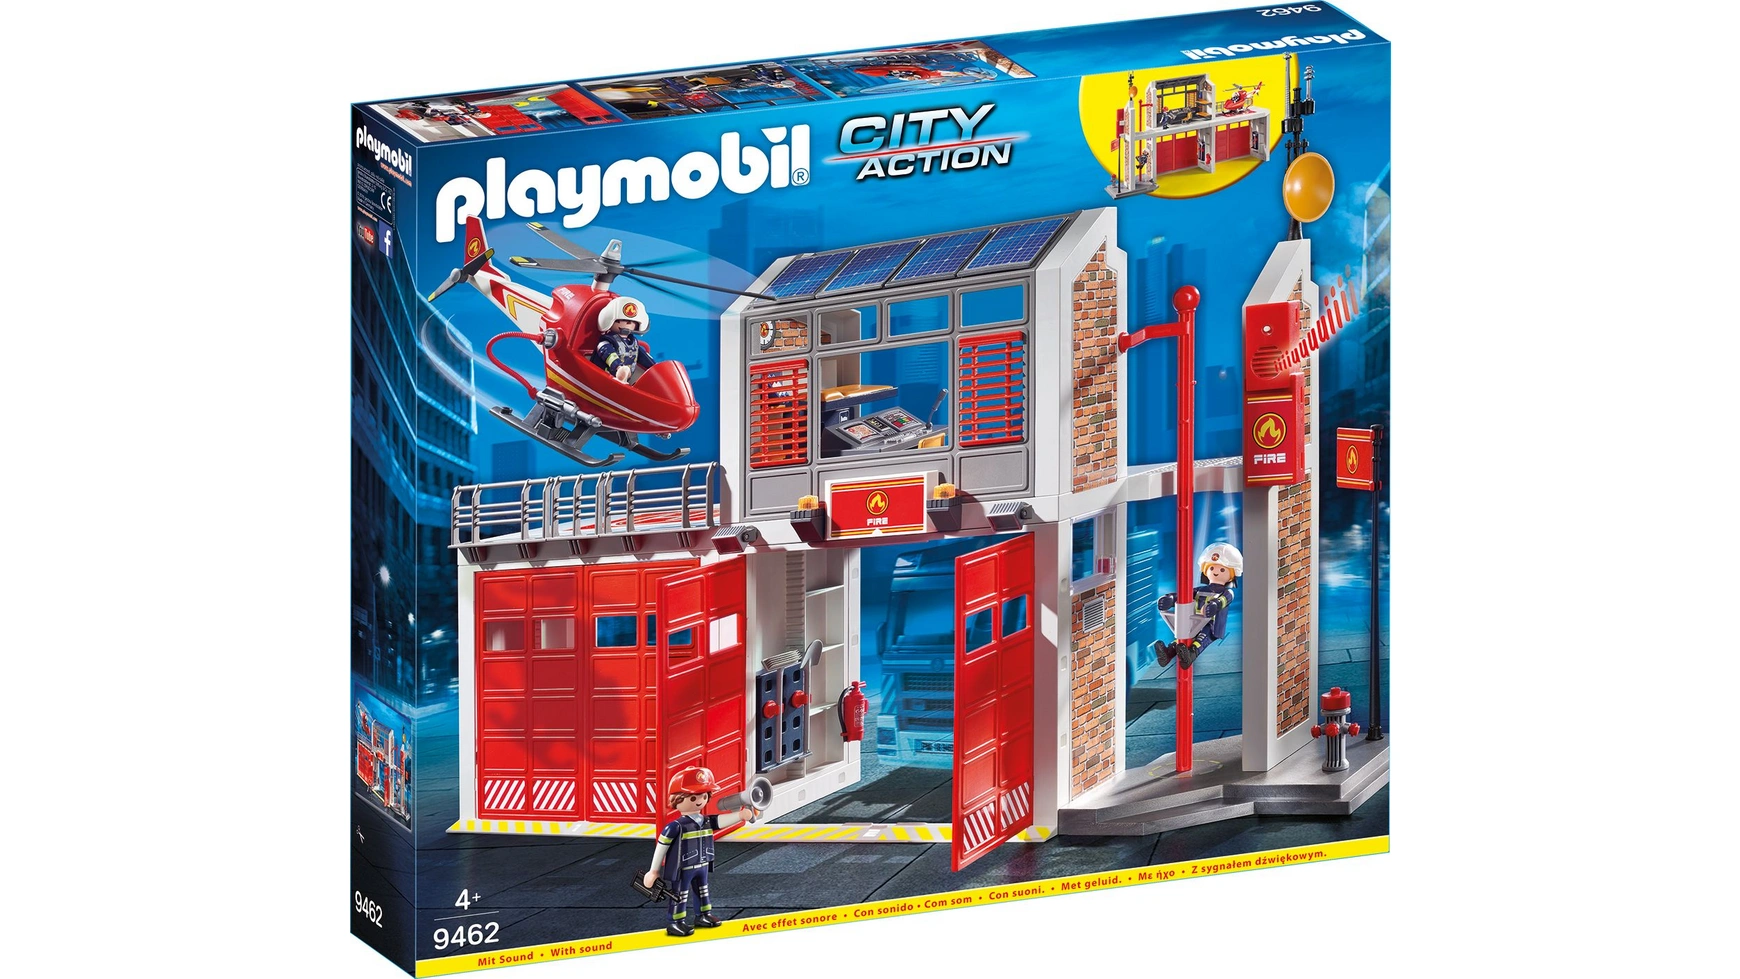 City action большая пожарная часть Playmobil playmobil city action 9464 пожарная служба пожарная машина 138 дет